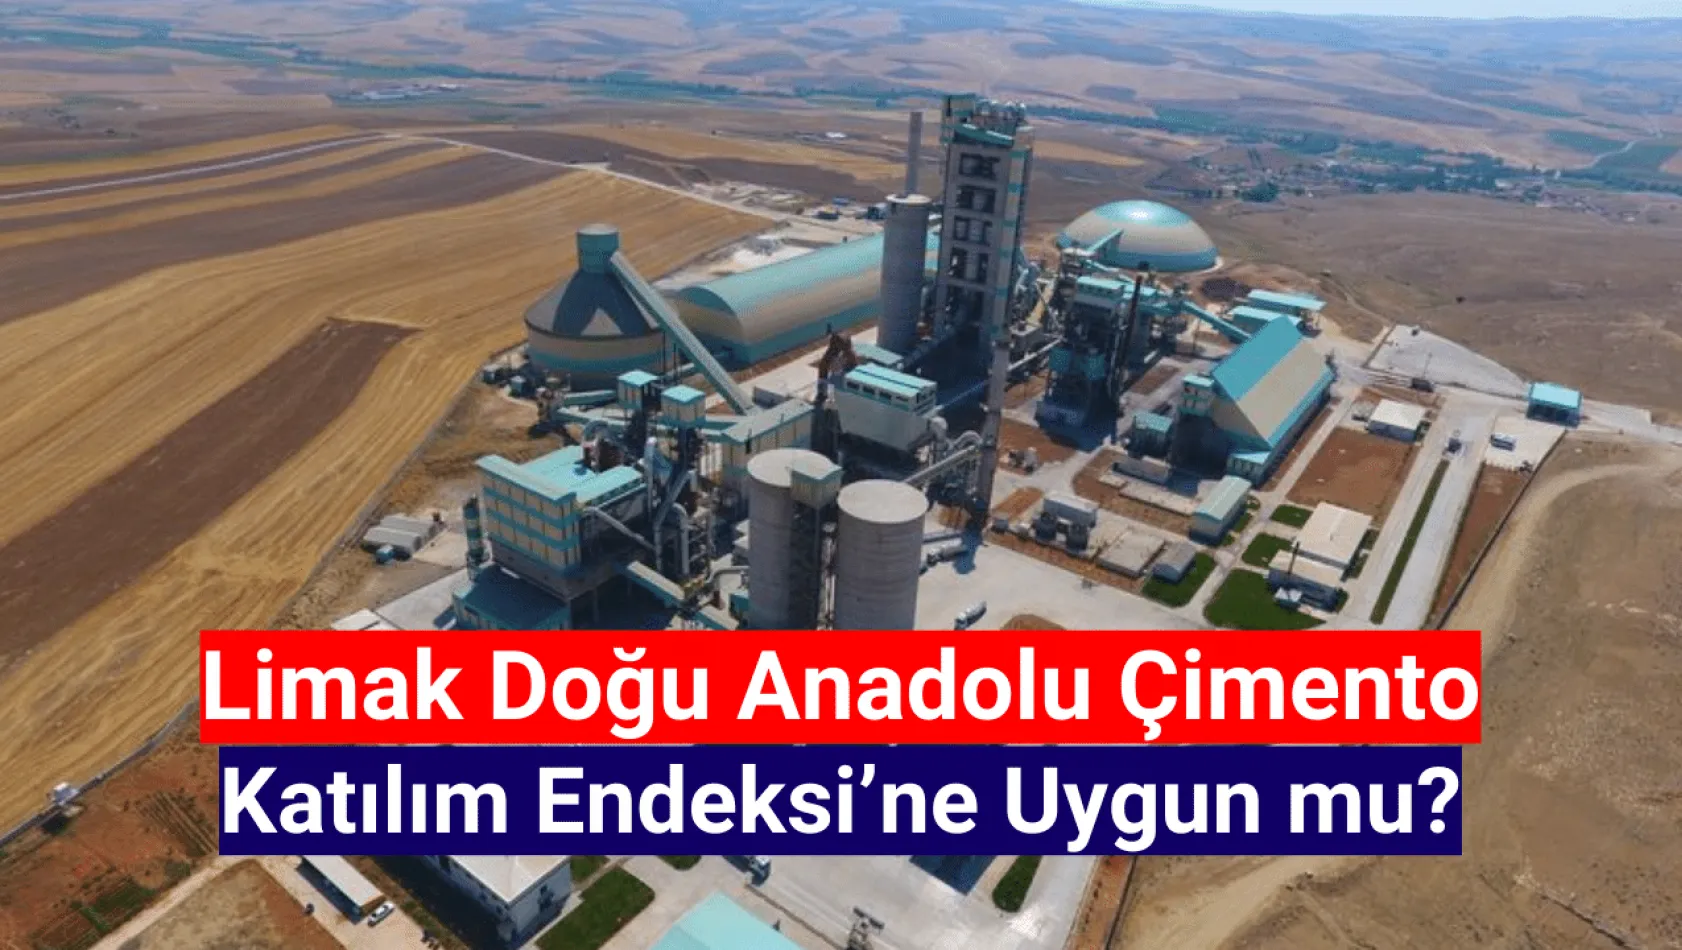 Limak Doğu Anadolu Çimento katılım endeksine uygun mu? HALKA ARZ!